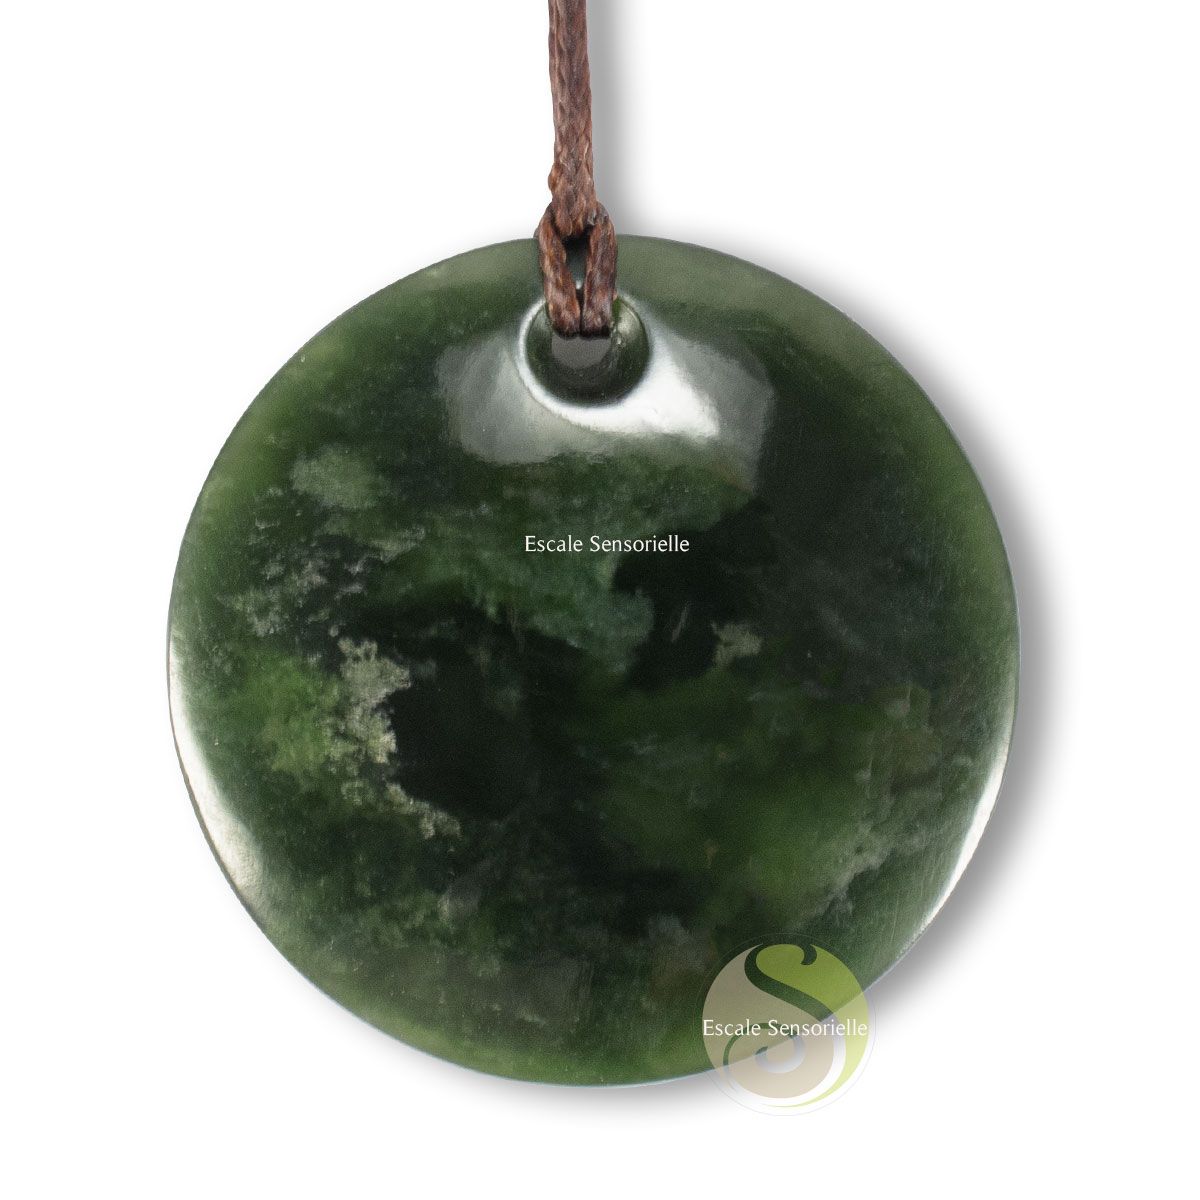 Jade pendentif disque Maori culture